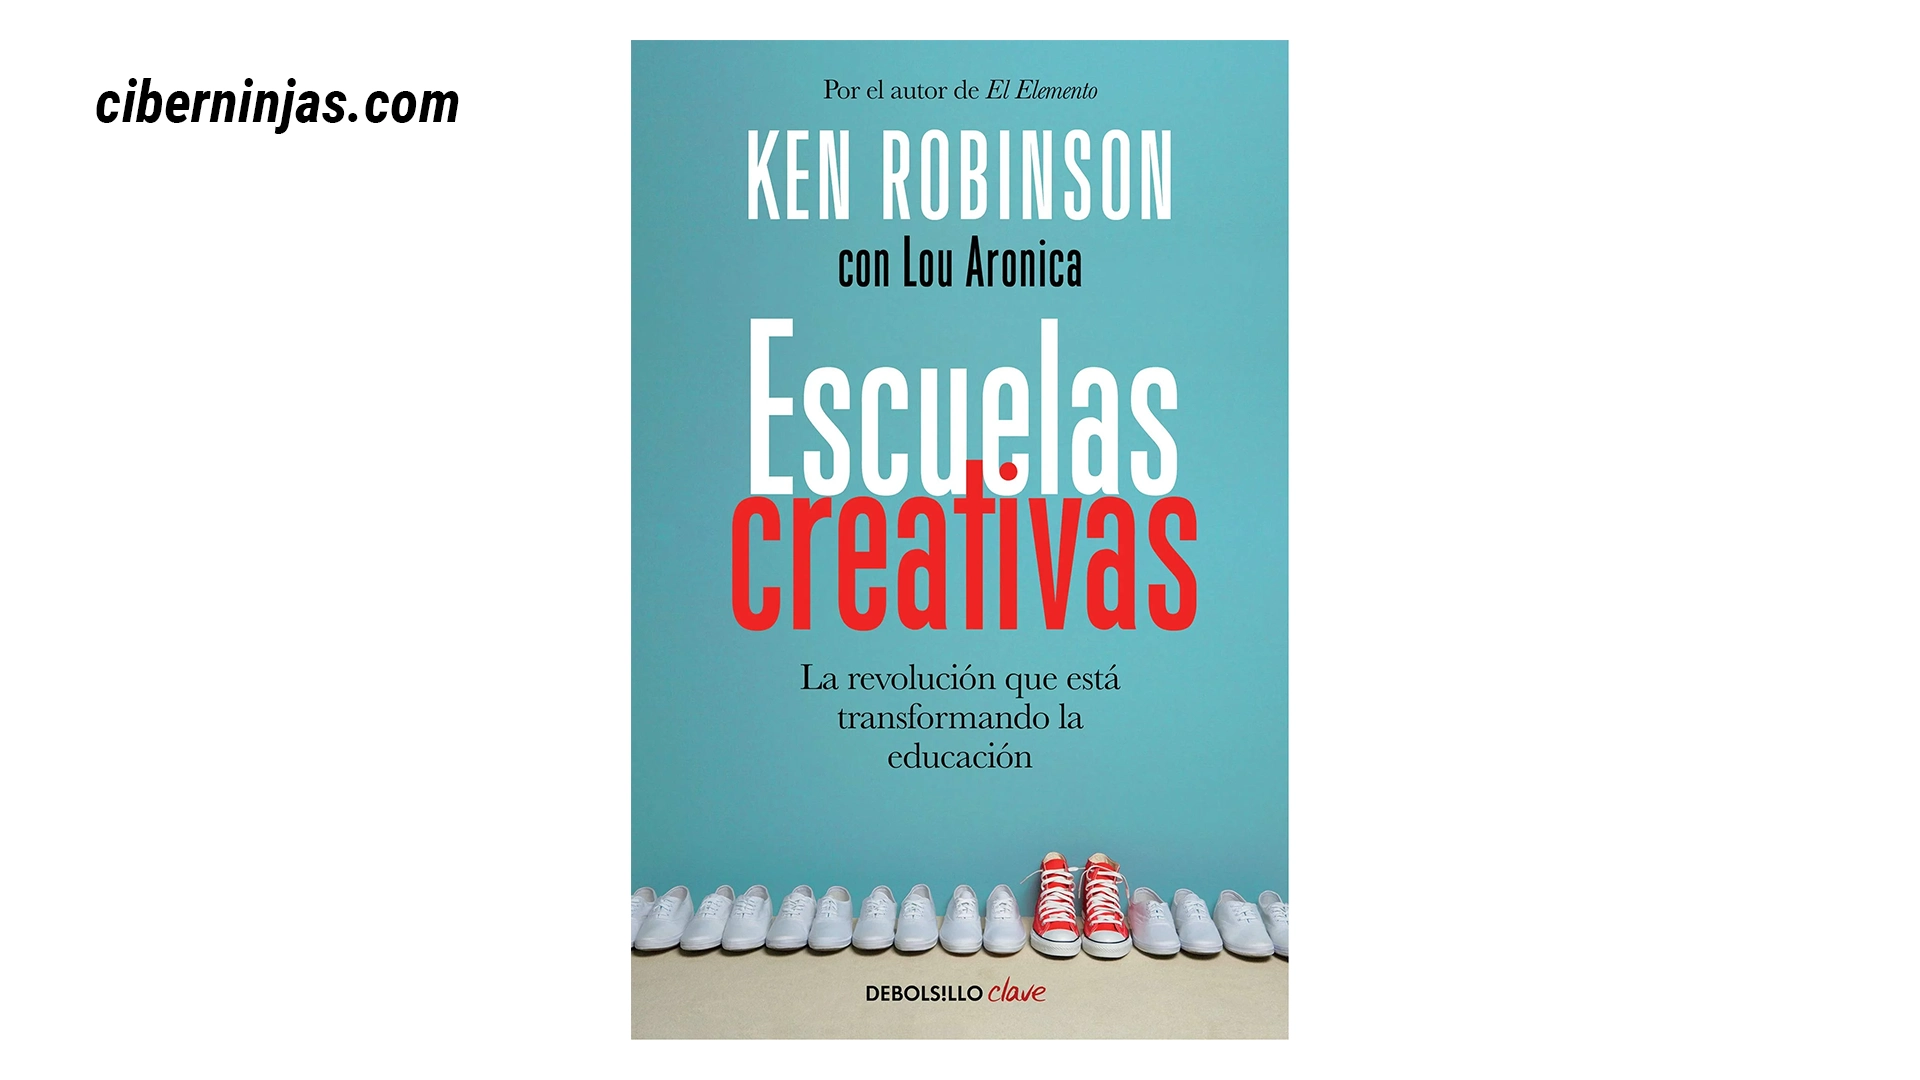 Escuelas Creativas: La revolución que está transformando la educación de Ken Robinson